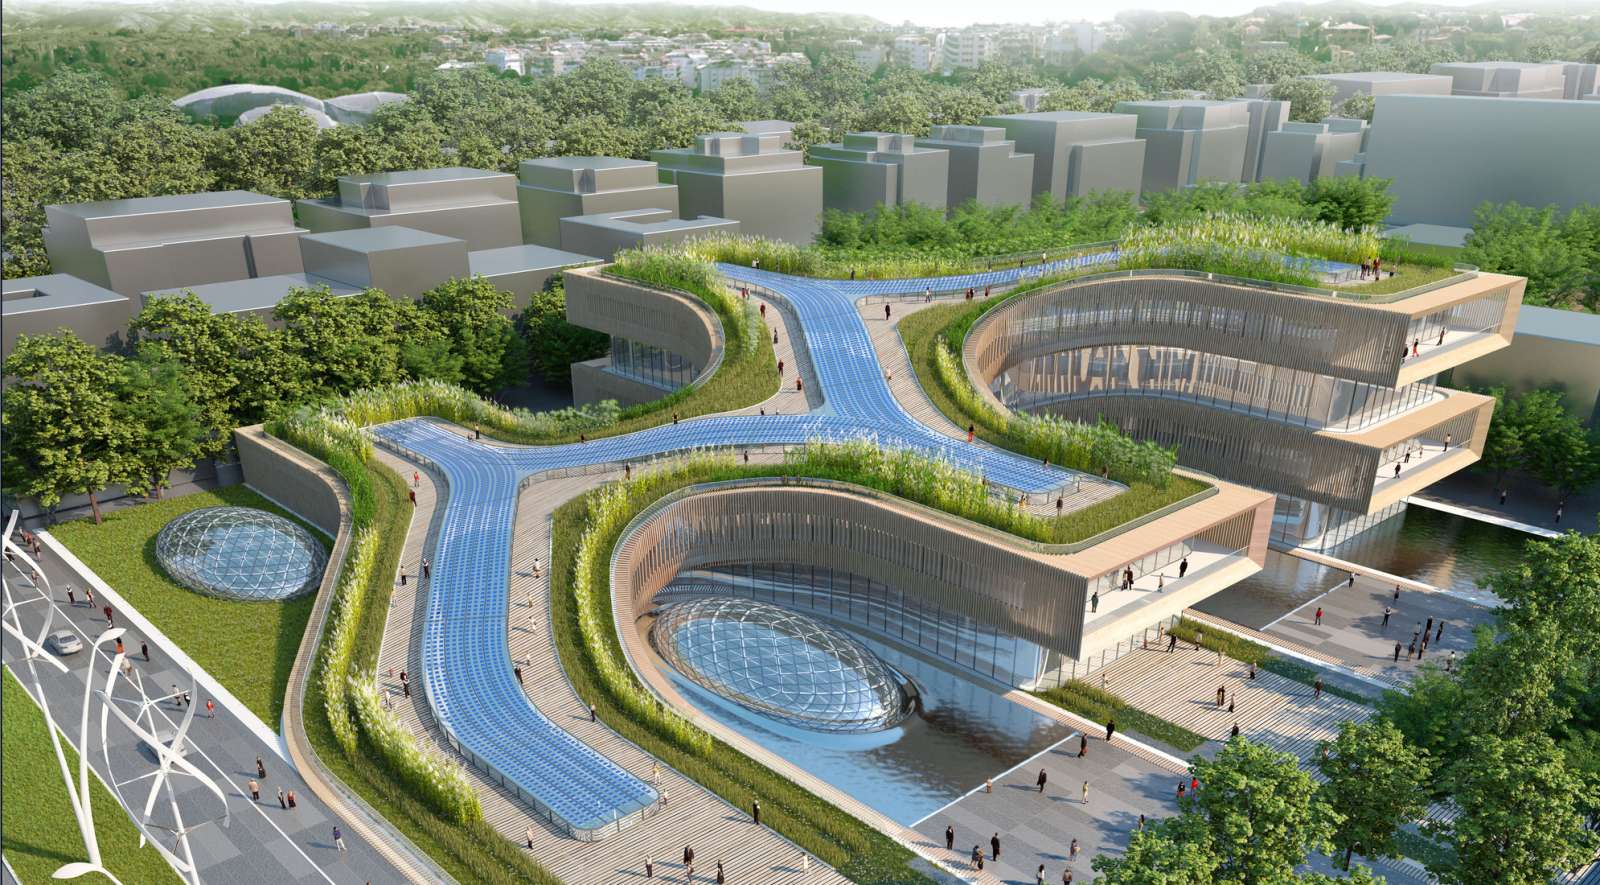 Città della Scienza a Self Sufficient Urban Ecosystem